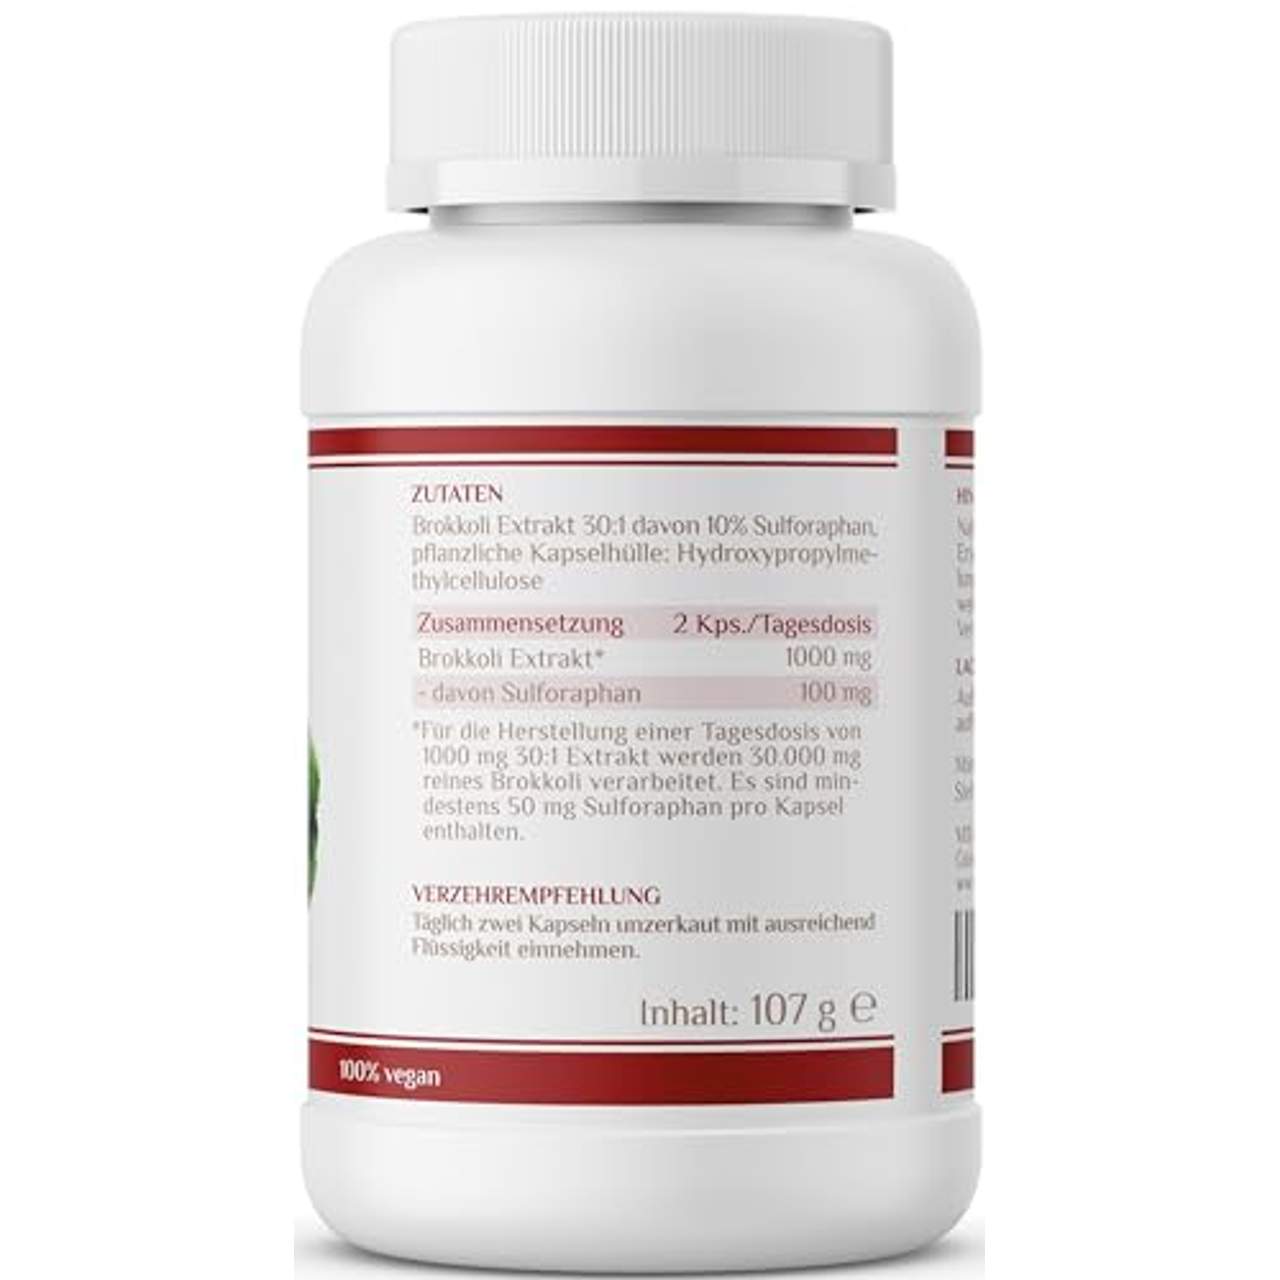 Sulforaphan I 50 mg pro Kapsel I hochdosiert aus 500 mg Brokkoli Extrakt I 120 vegane